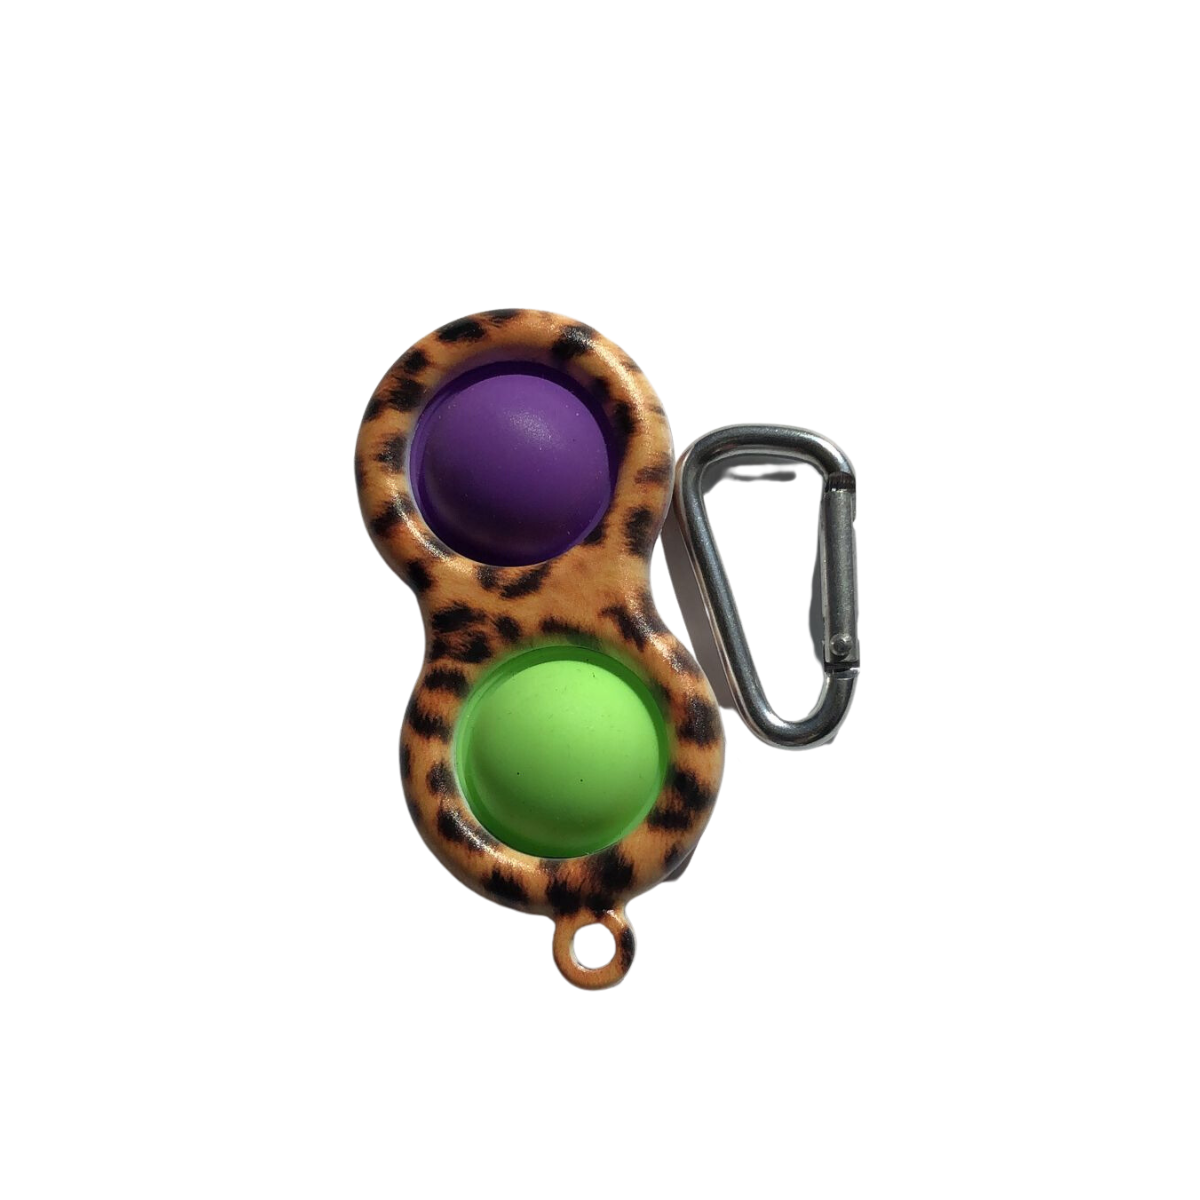 Keychain Bubble Popper Fidget purple and green zebra